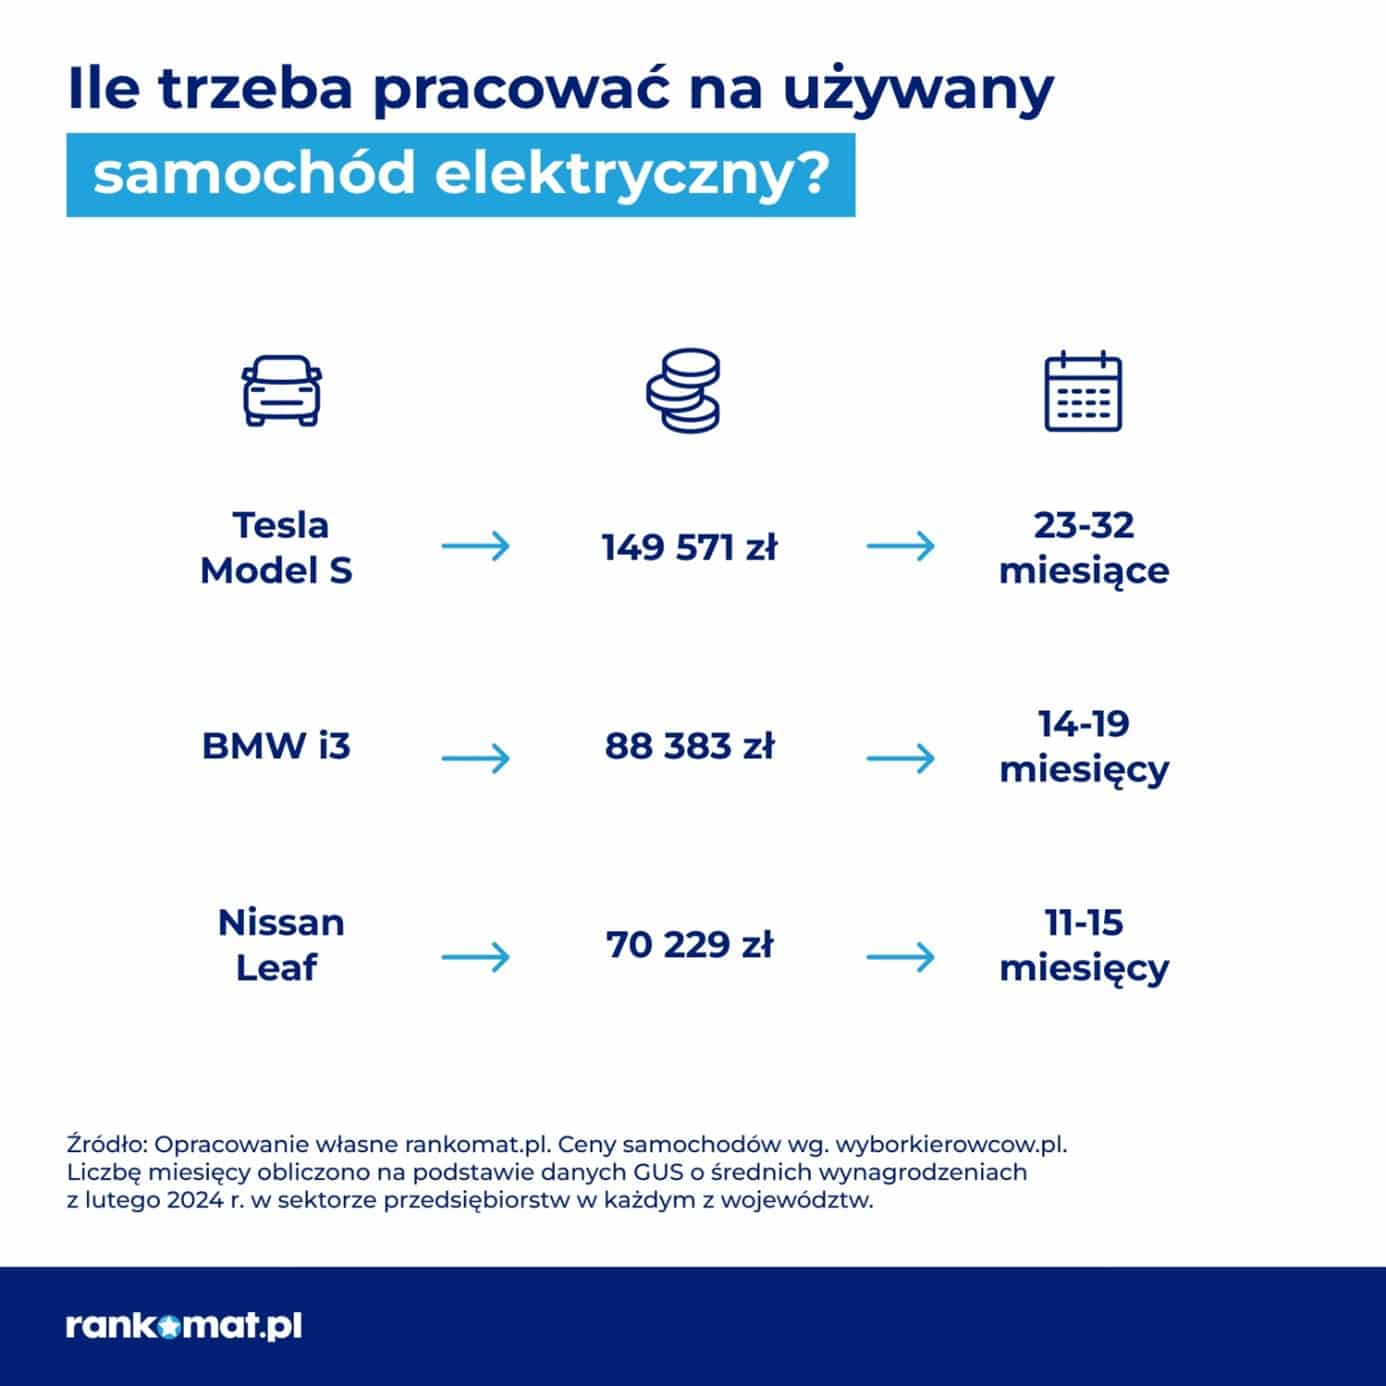 Rankomat.pl – ile trzeba pracować na używany samochód elektryczny